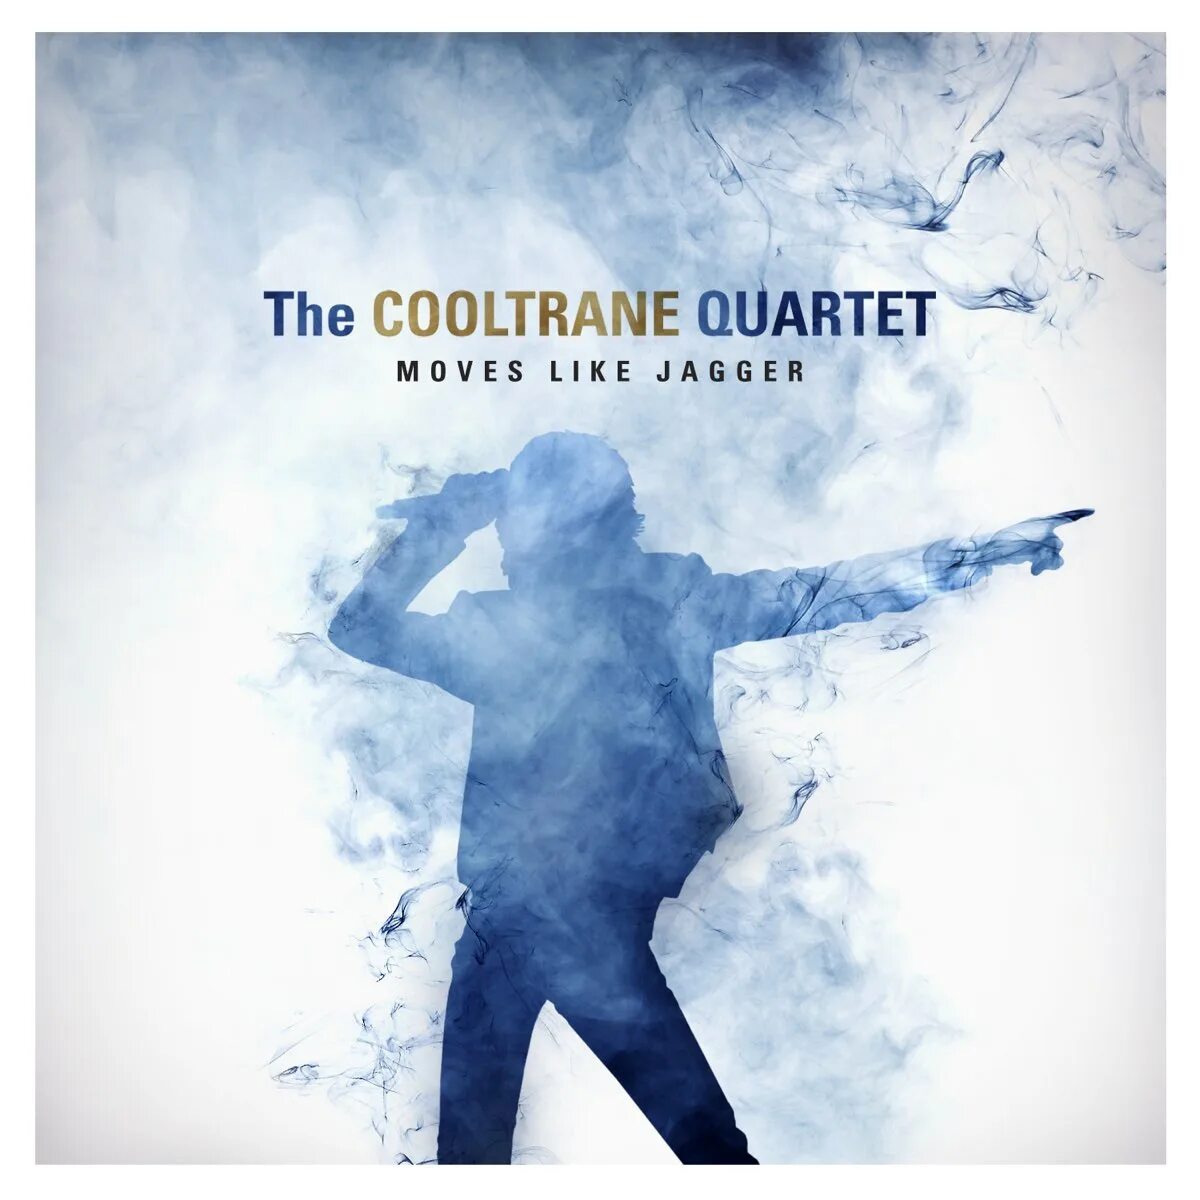 The Cooltrane Quartet. The Cooltrane Quartet фото. The Cooltrane Quartet Википедия. The-Cooltrane-Quartet-like-a-Virgin. Лайк джаггер